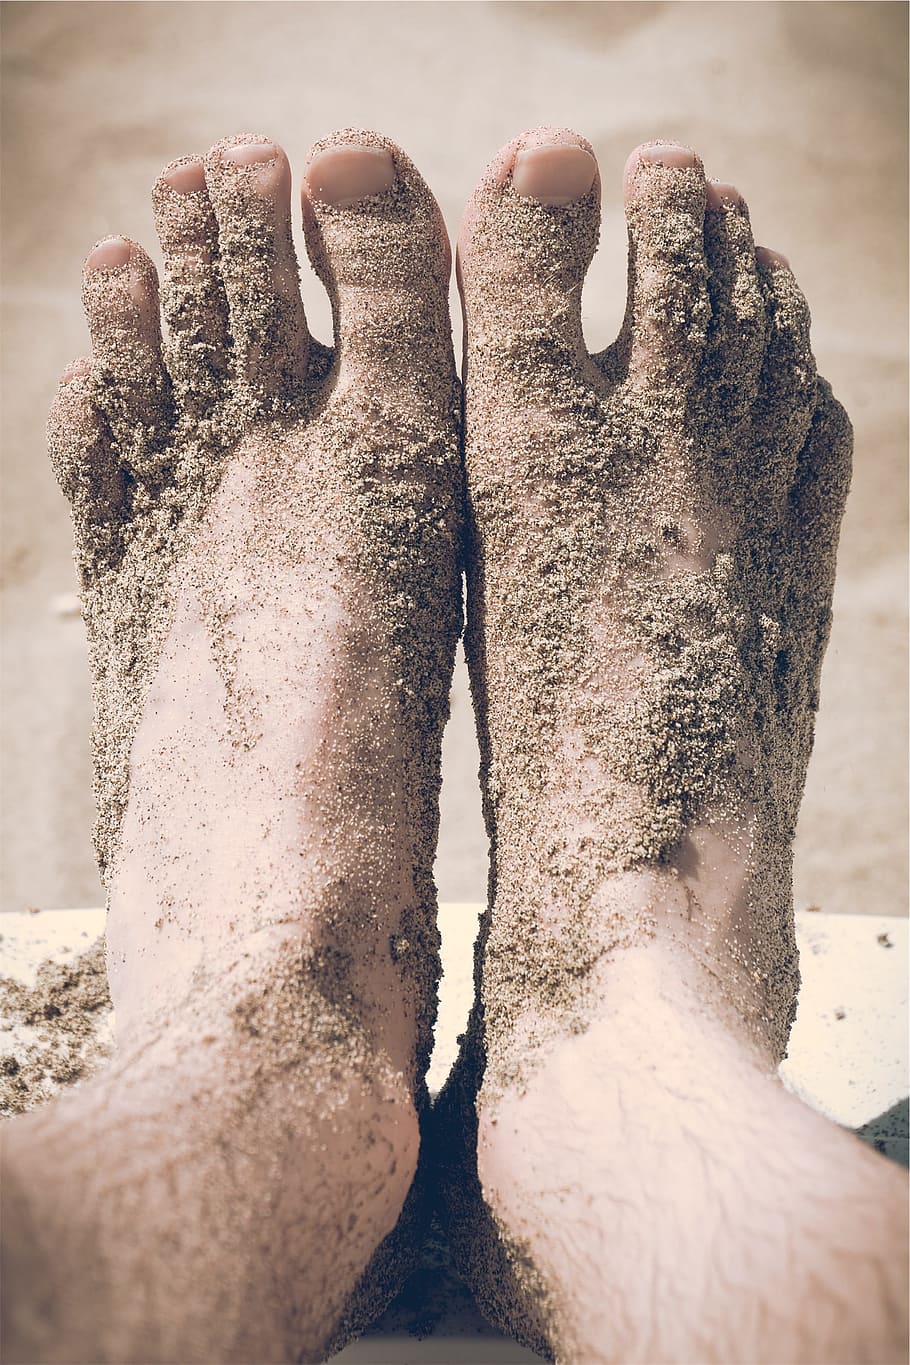 pies, pies descalzos, dedos de los pies, arena, playa, una persona, parte del cuerpo humano, personas reales, pierna humana, sección baja